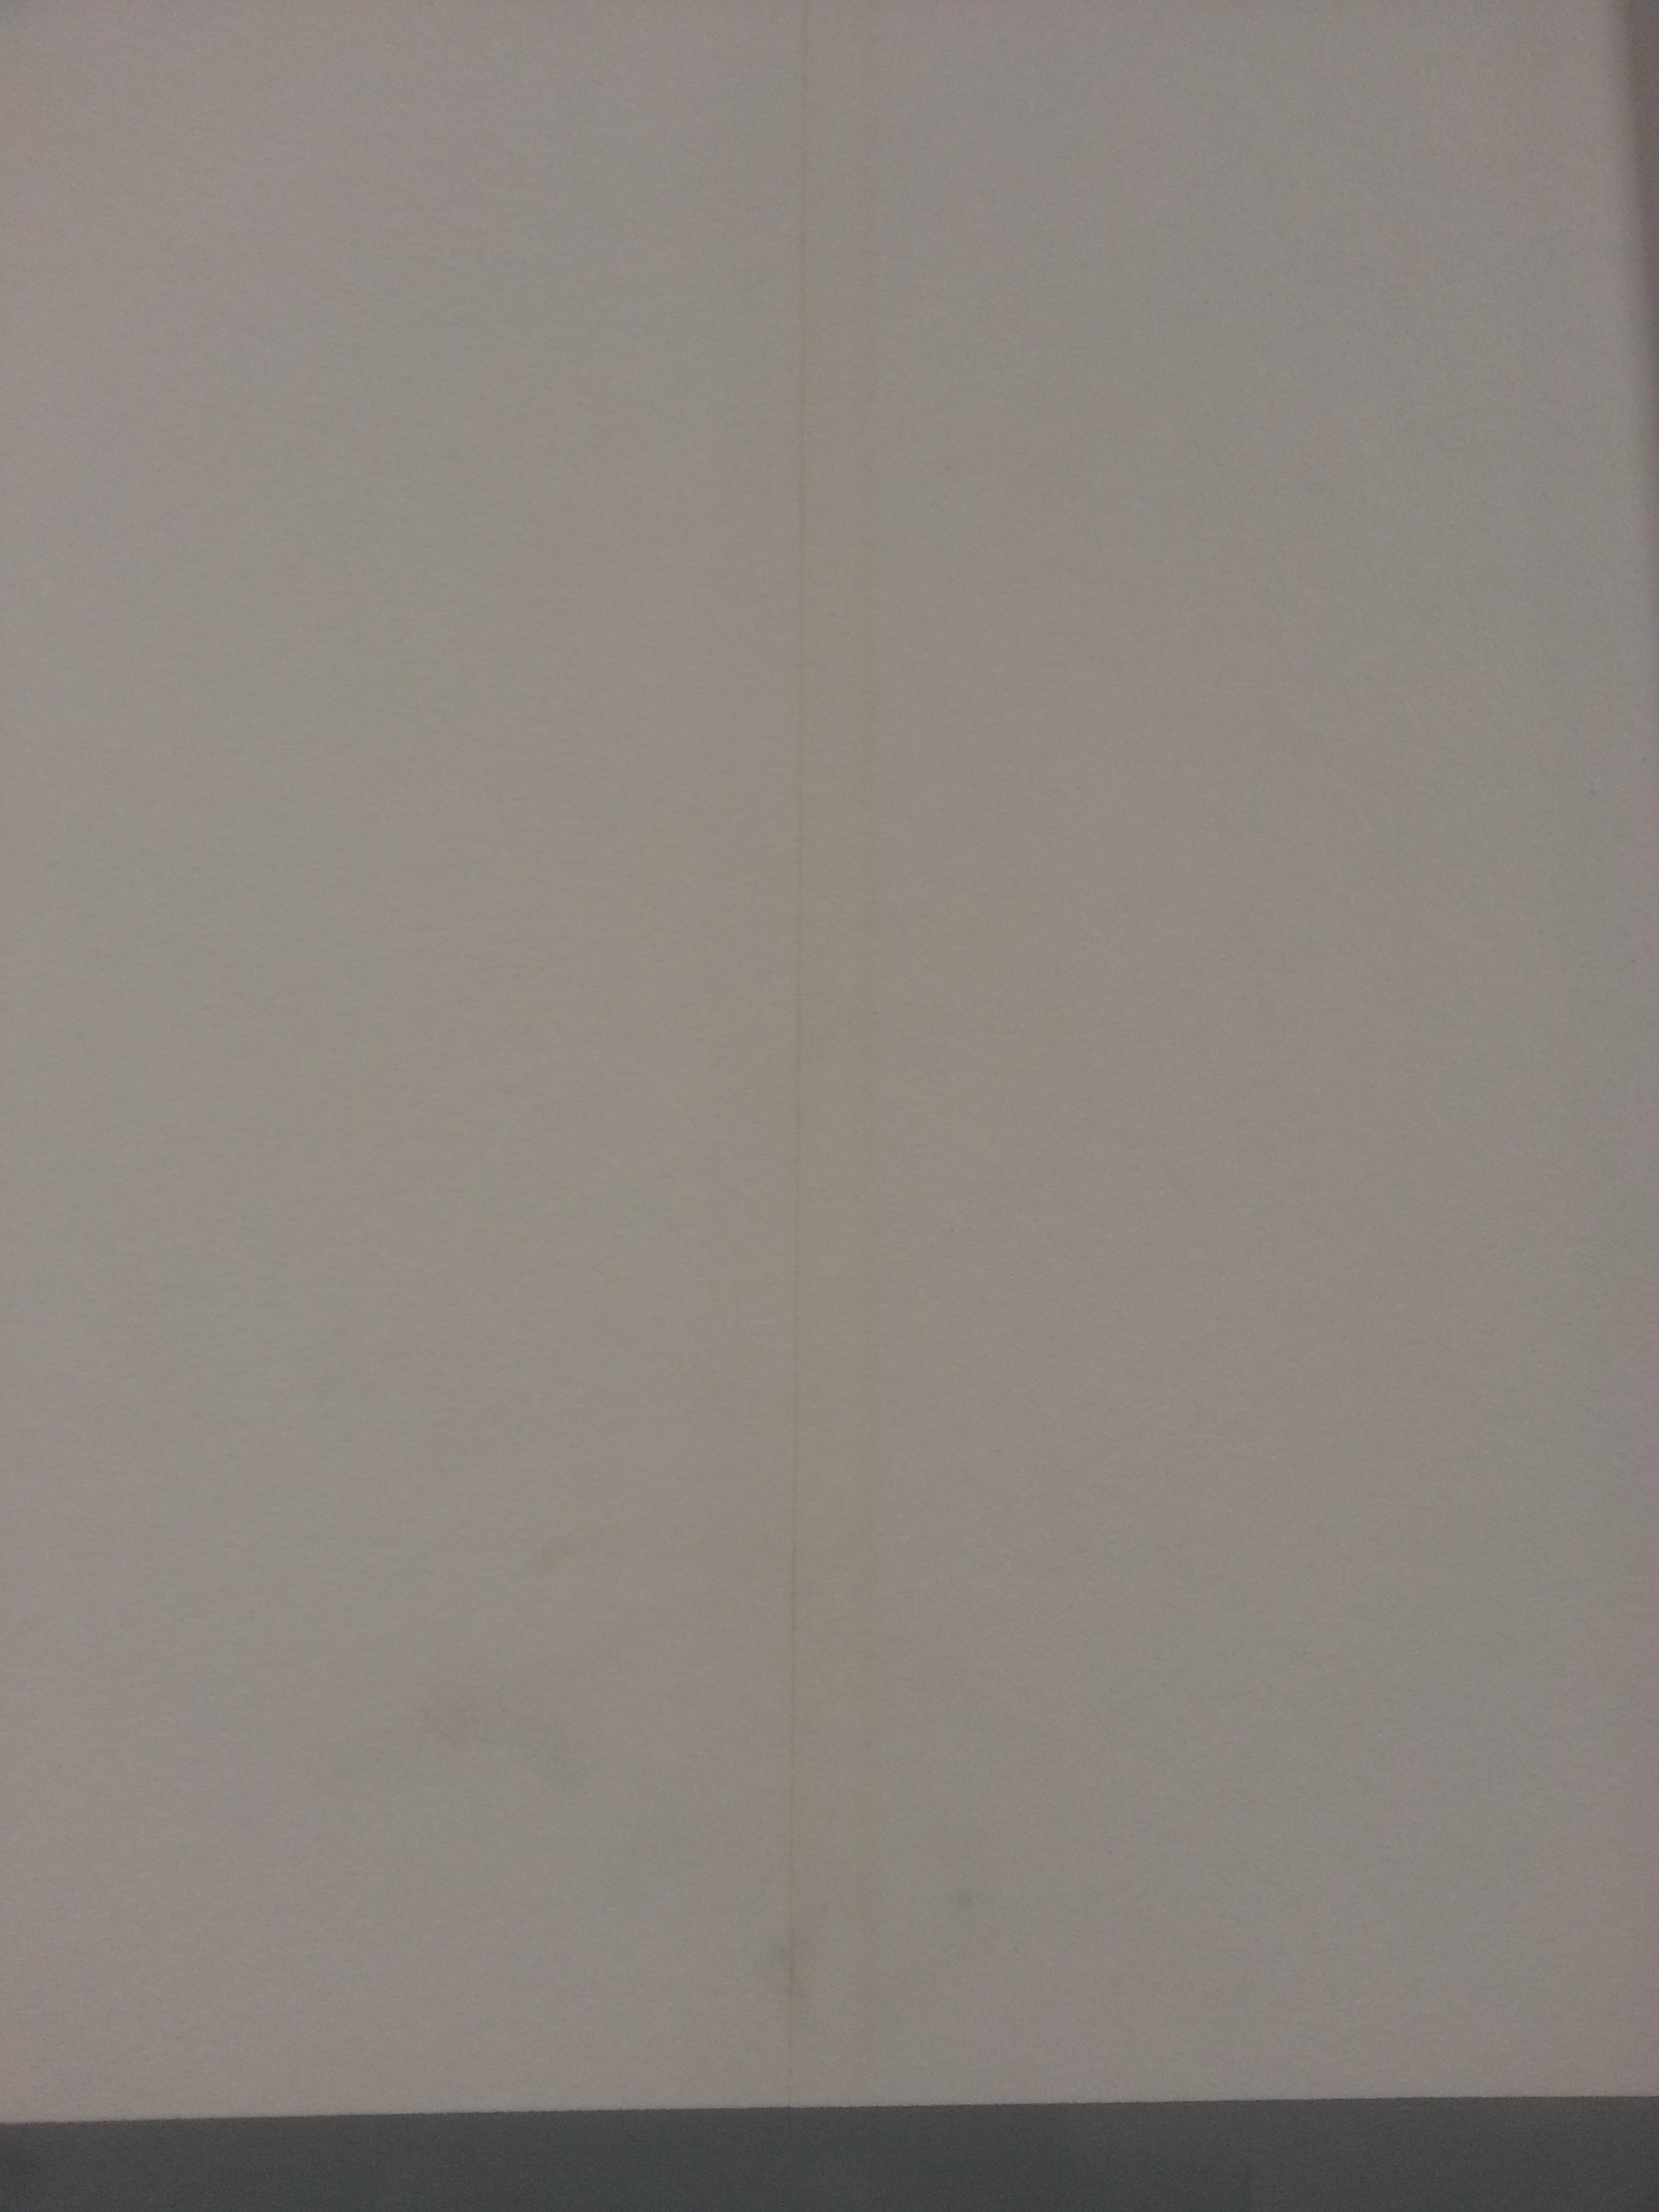 Walls2Paint - slette vegger uten gips+sparkel - 2013-09-25 16.36.04.jpg - jaxry